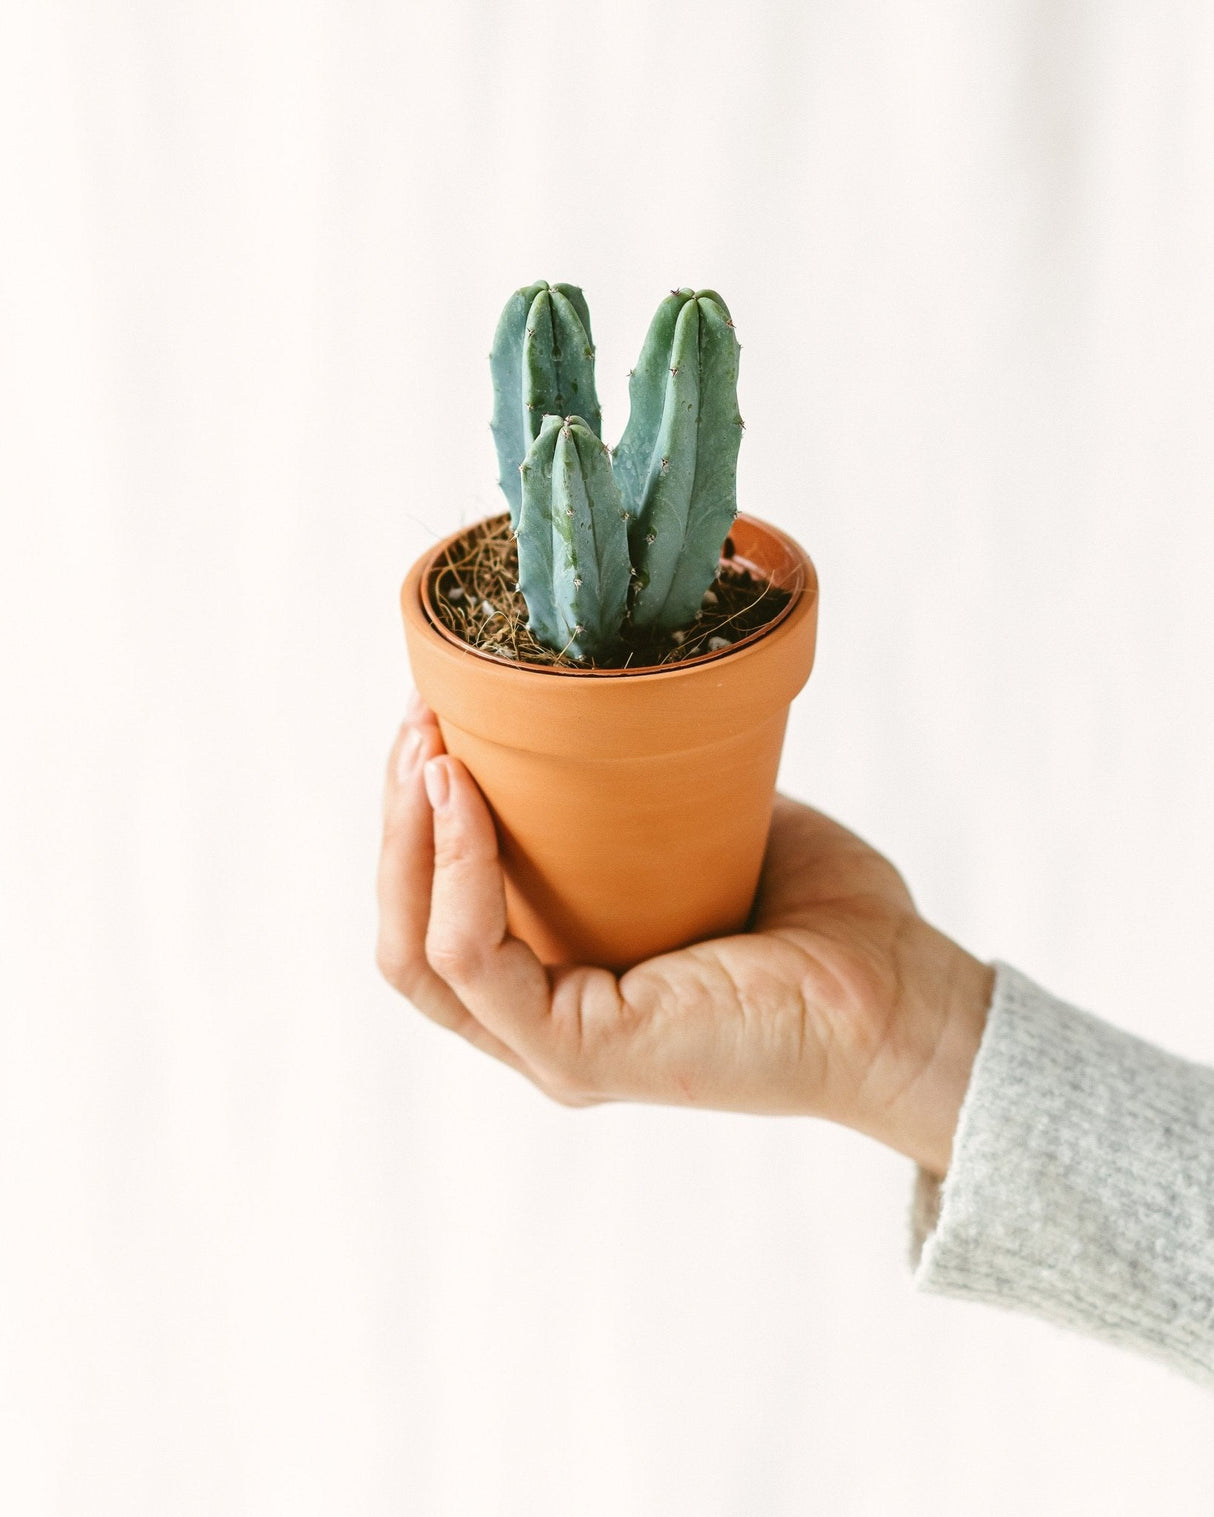 Myrtillocactus mini cactus per principianti come pianta d